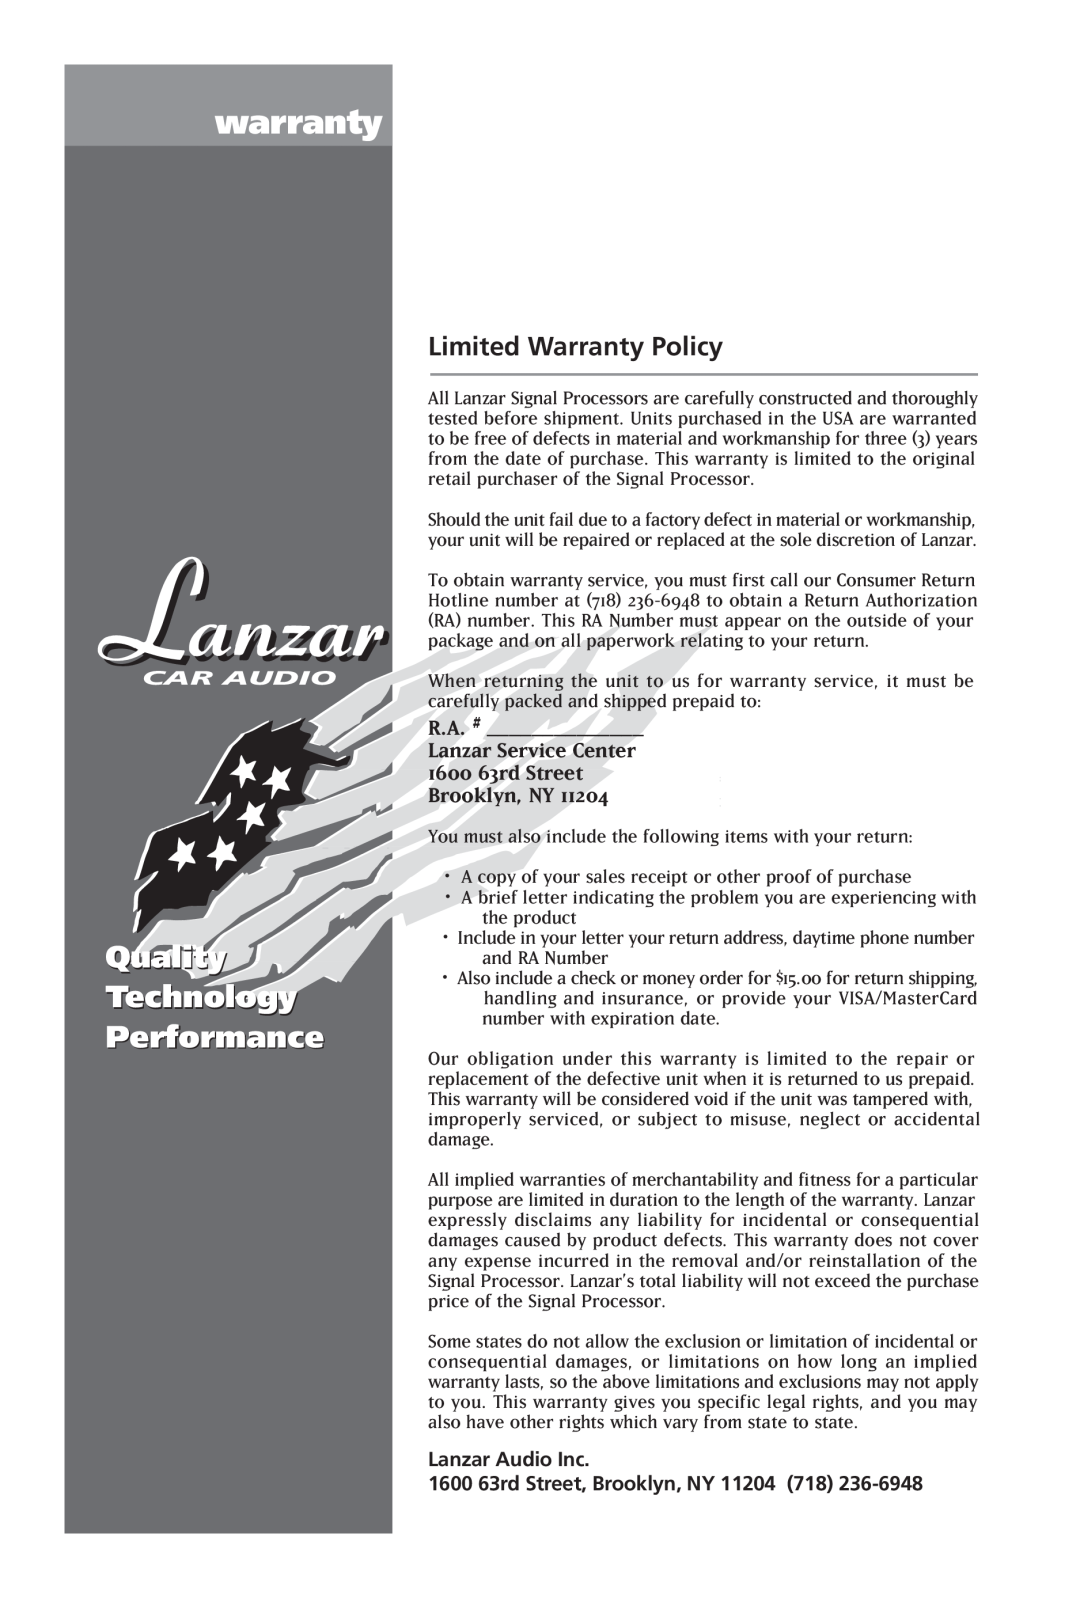 Lanzar Car Audio E540P, E740V, E750S manual warranty, Quality Technology Performance, R.A. # Lanzar Service Center 